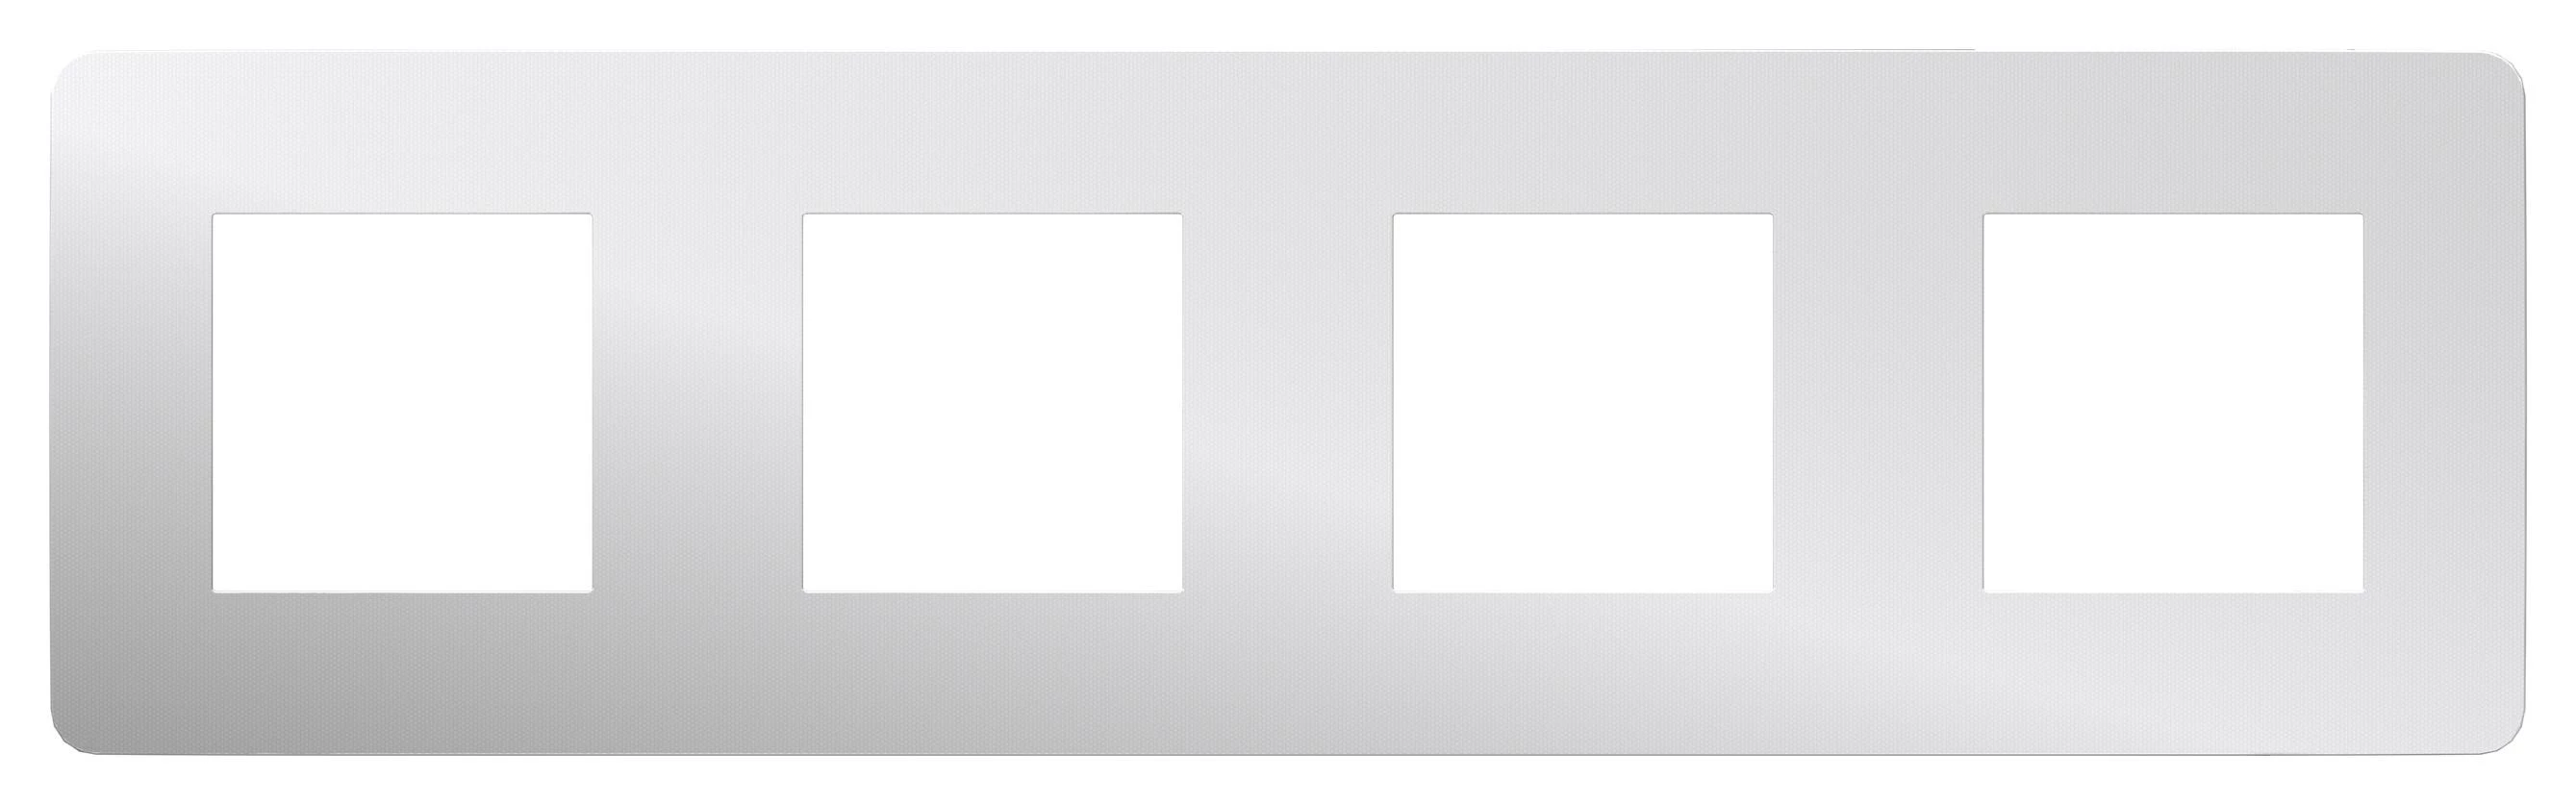  артикул NU280855 название Рамка 4-ая (четверная), Хром/Белый, серия Unica Studio, Schneider Electric